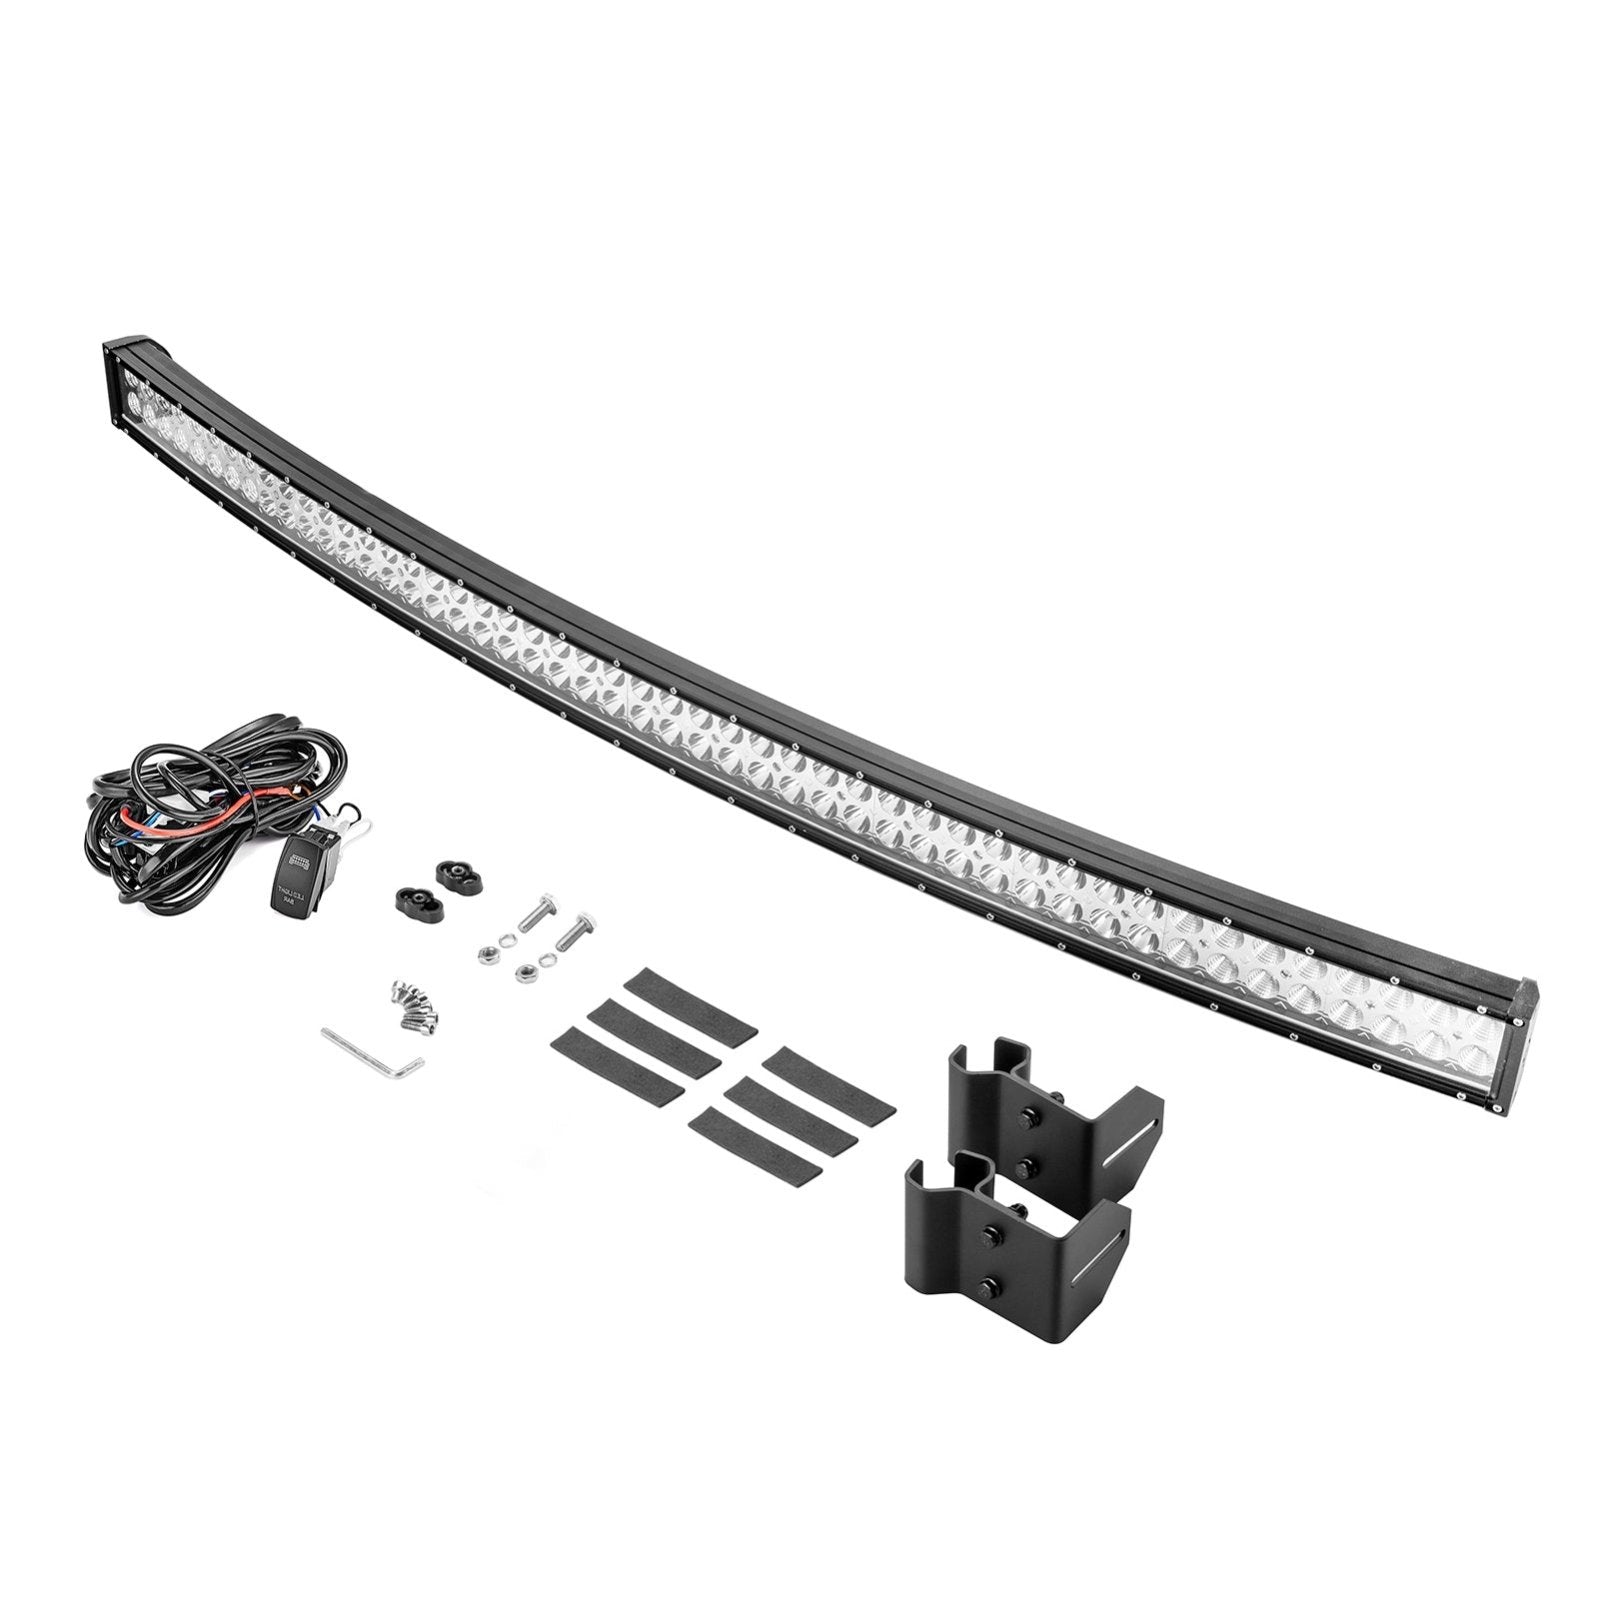 Weisen 50" 288W Curved LED Light Bar Fit Polaris Ranger 570/900/1000 Fullsize Models - Weisen